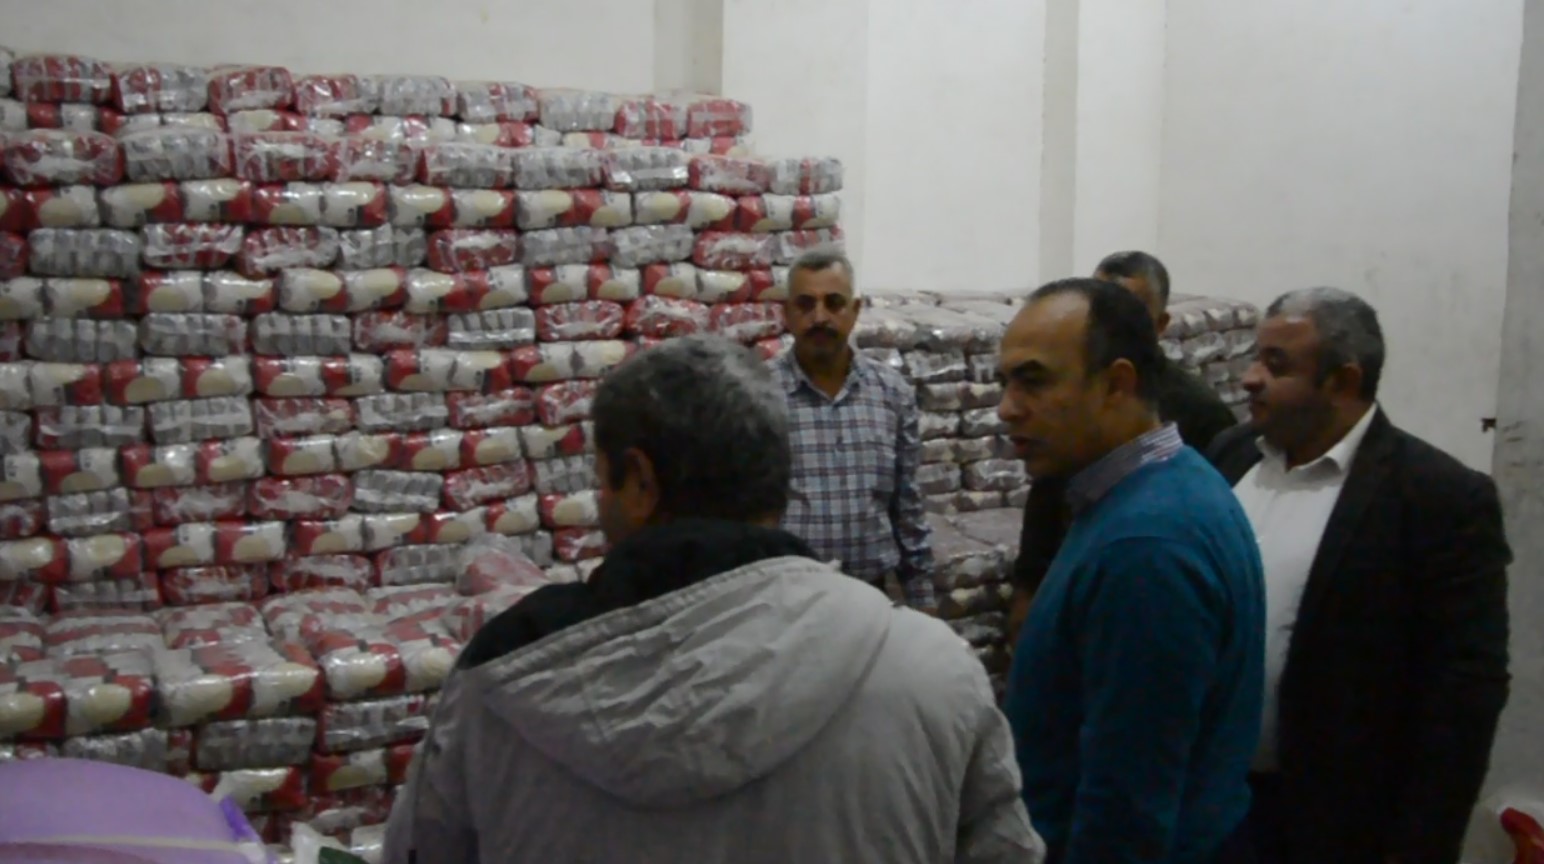 ضبط 10 أطنان أرز بمركز أبو قرقاص في المنيا وطرح الكميات المضبوطة بالمنافذ (1)